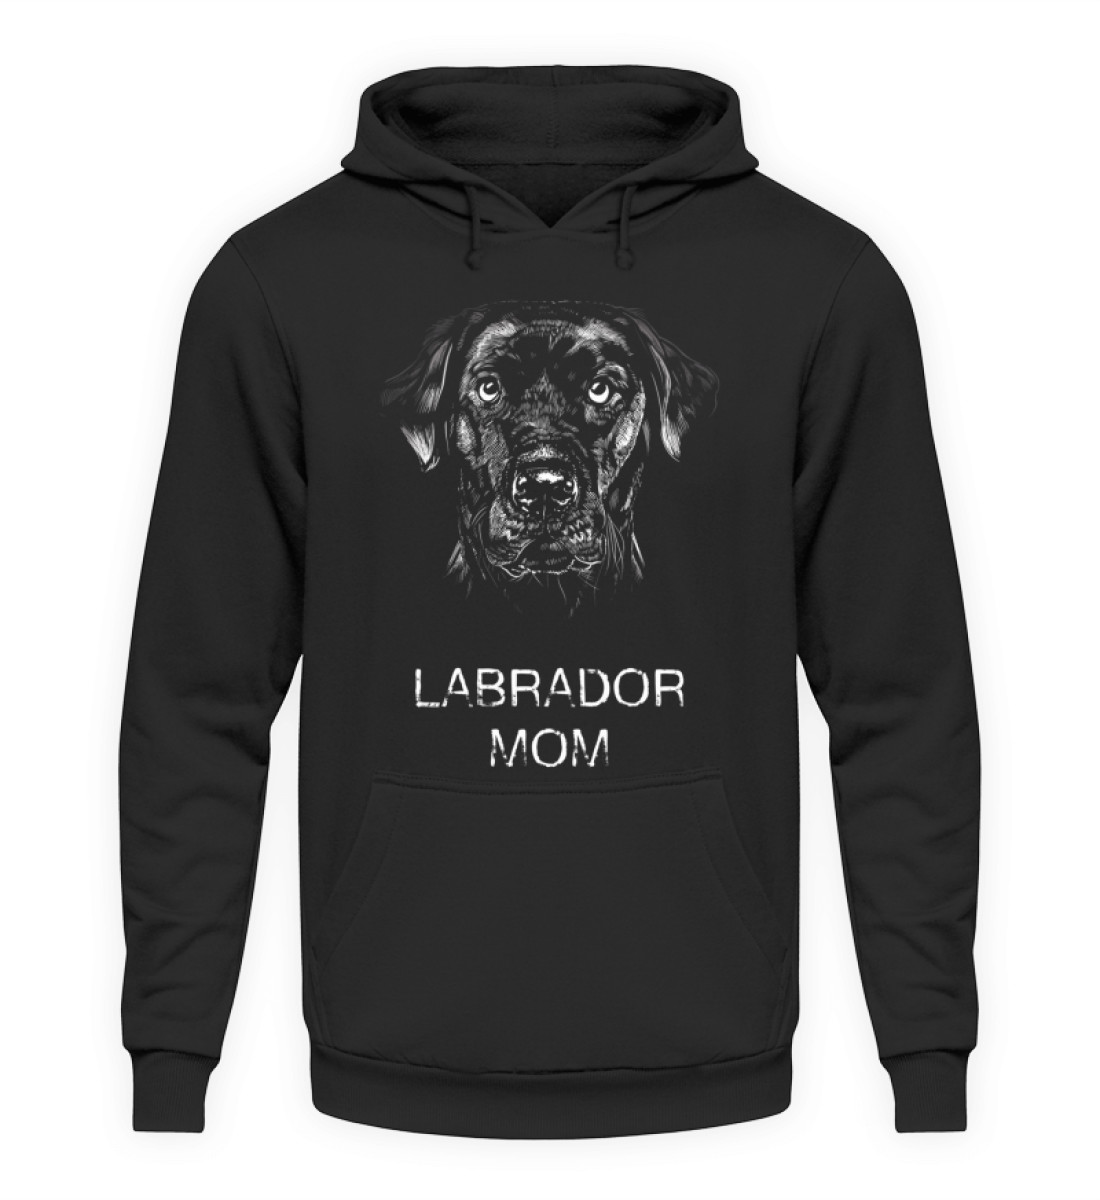 Labrador Mom - Hoodie für Hunde-Frauchen - Unisex Kapuzenpullover Hoodie-639